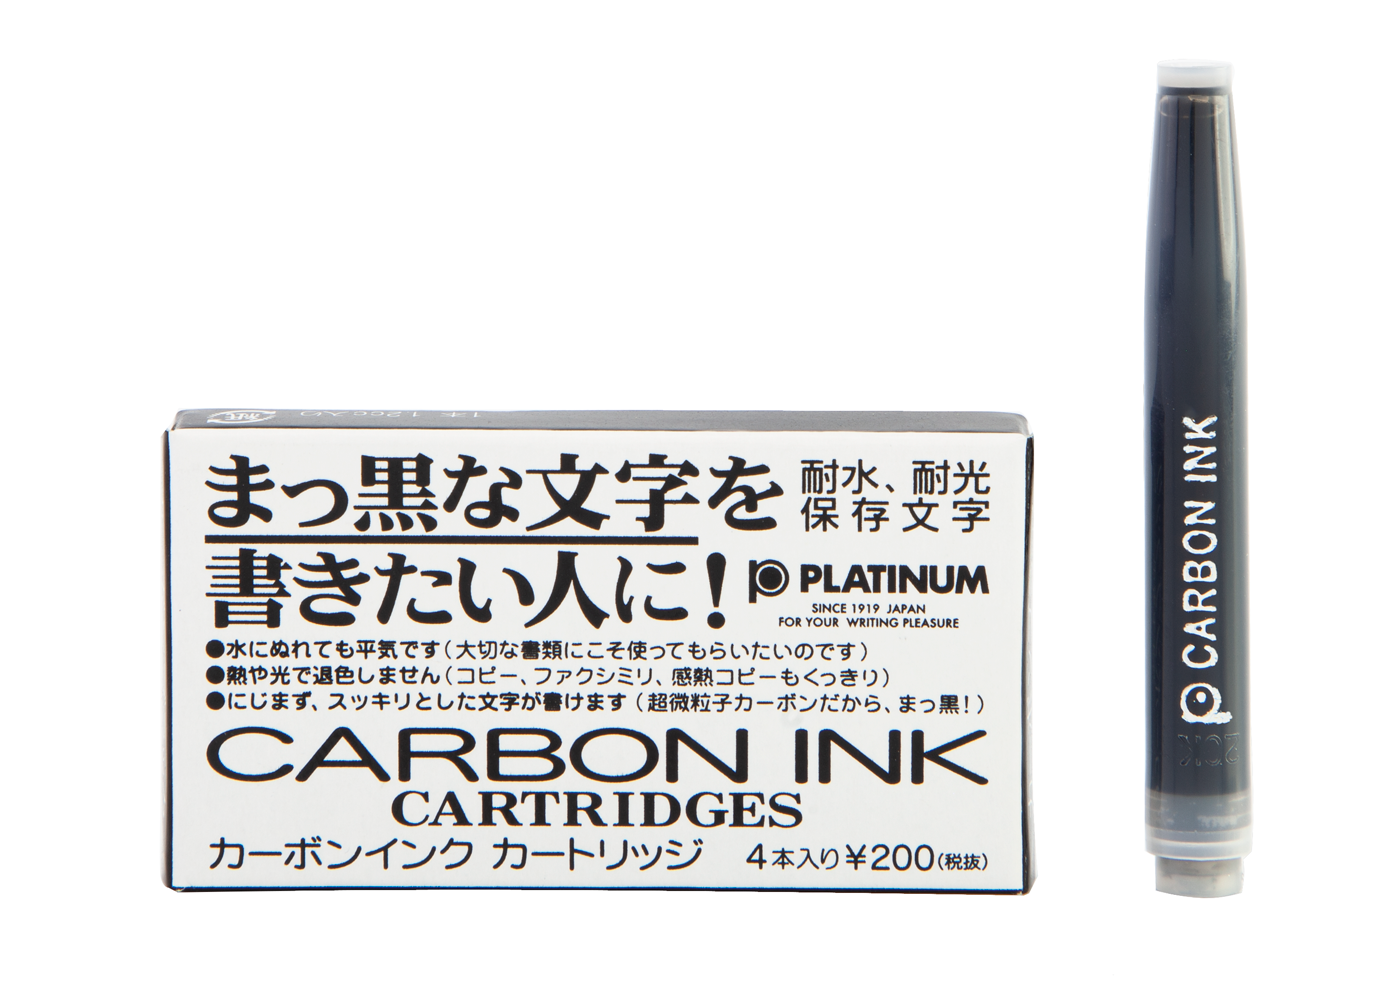 Platinum Pigment Carbon Black